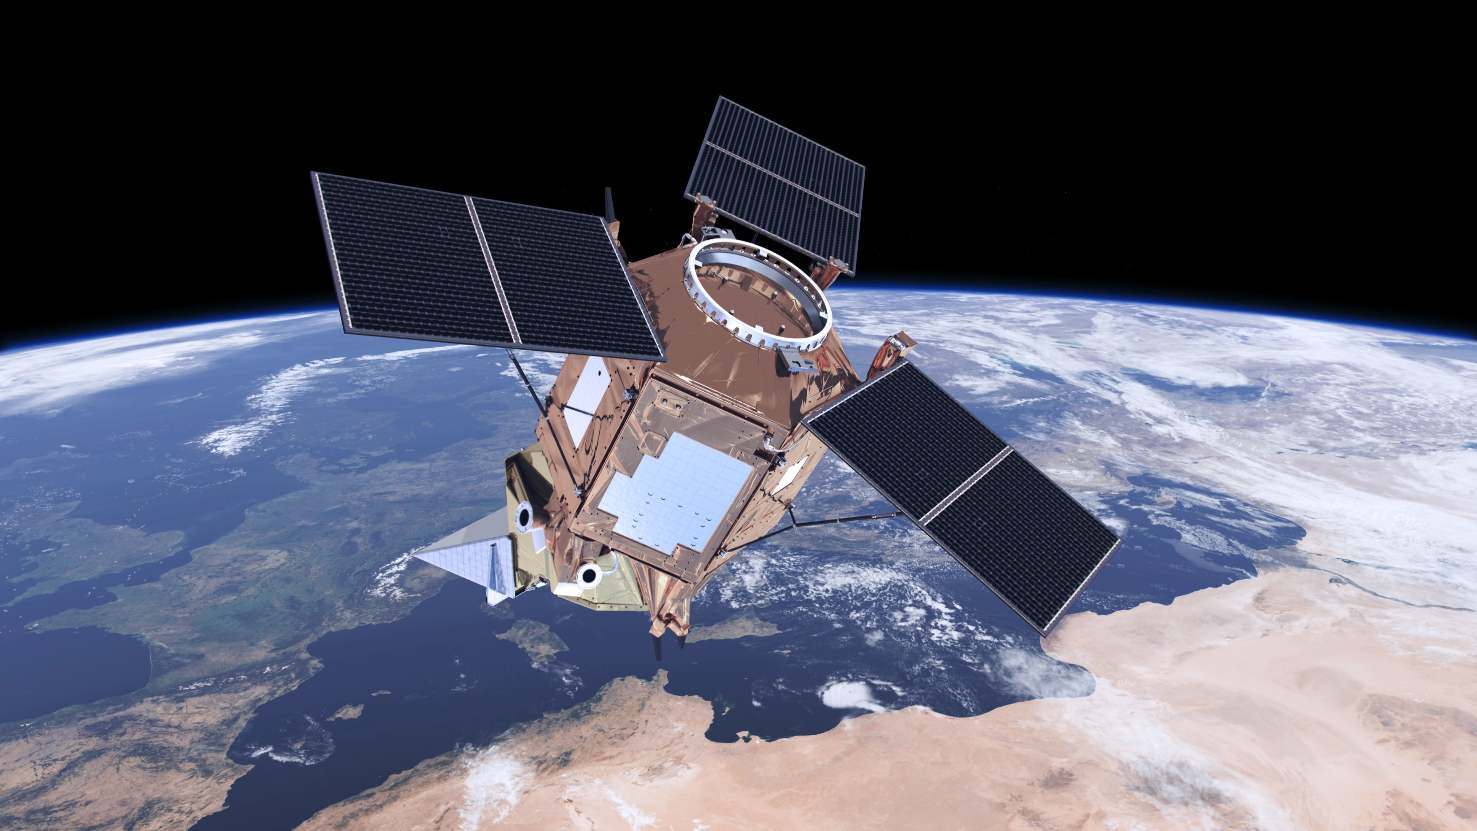 Europe's Sentinel-5P satellite in orbit